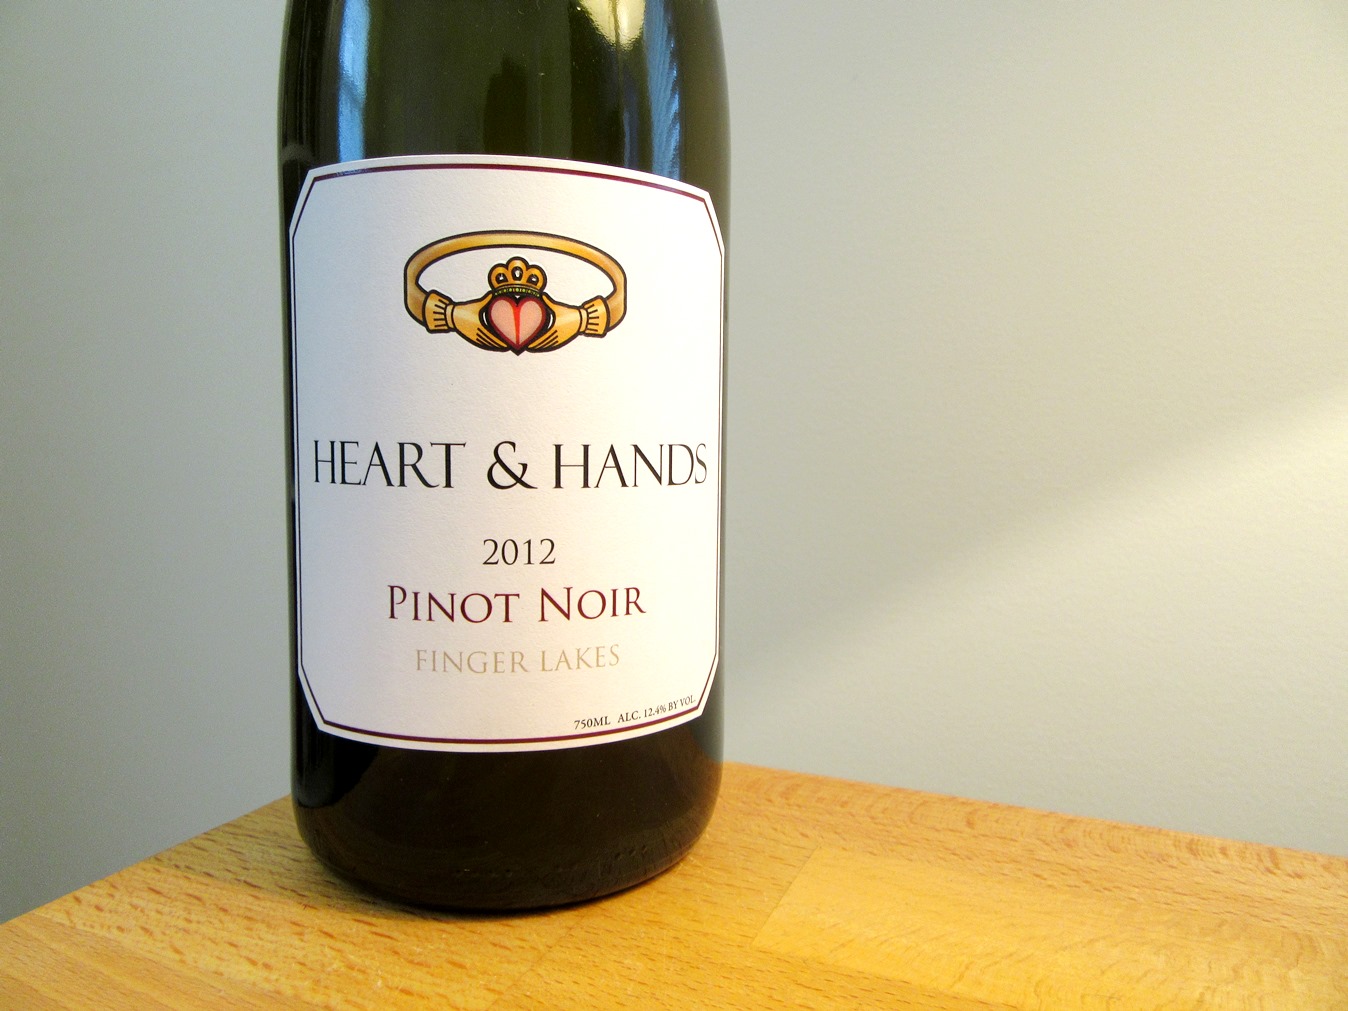 Heart & Hands, Pinot Noir 2012, Finger Lakes, New York